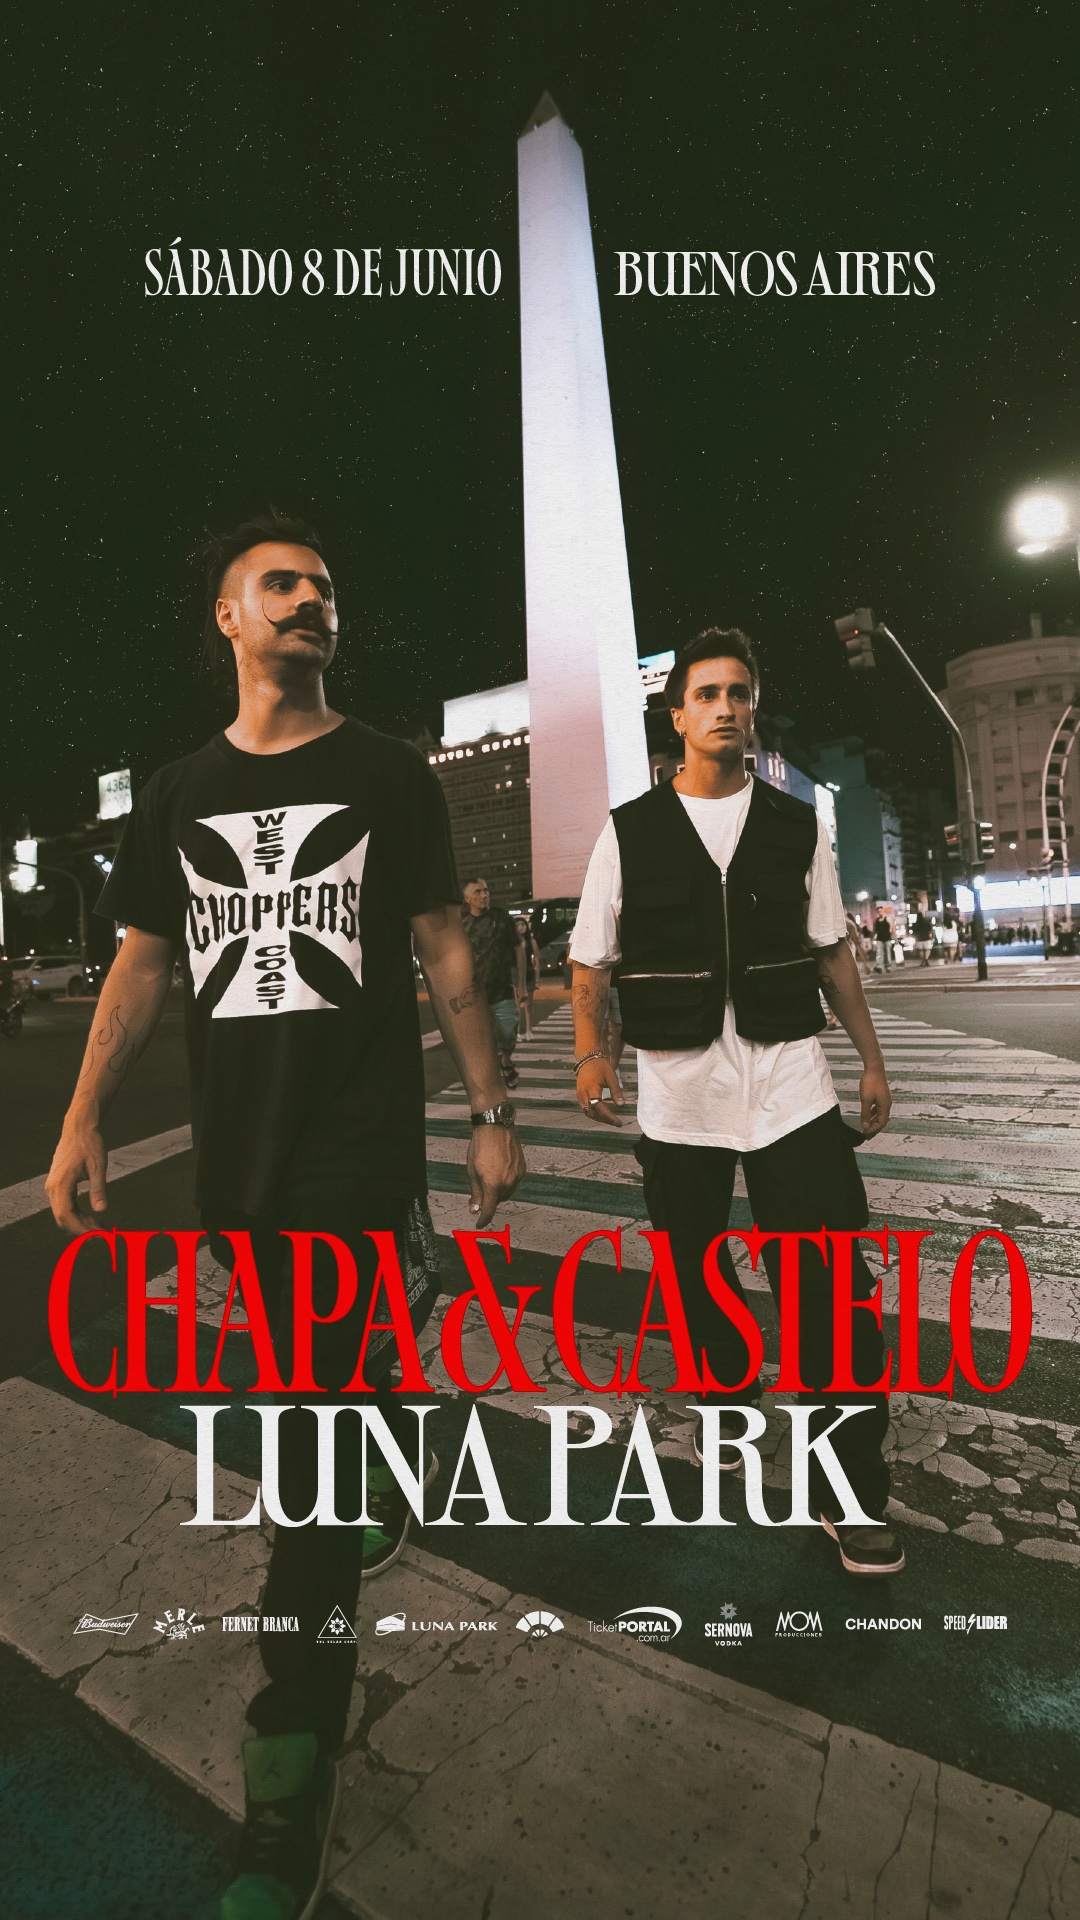 Chapa & Castelo by La Juanita - Página frontal